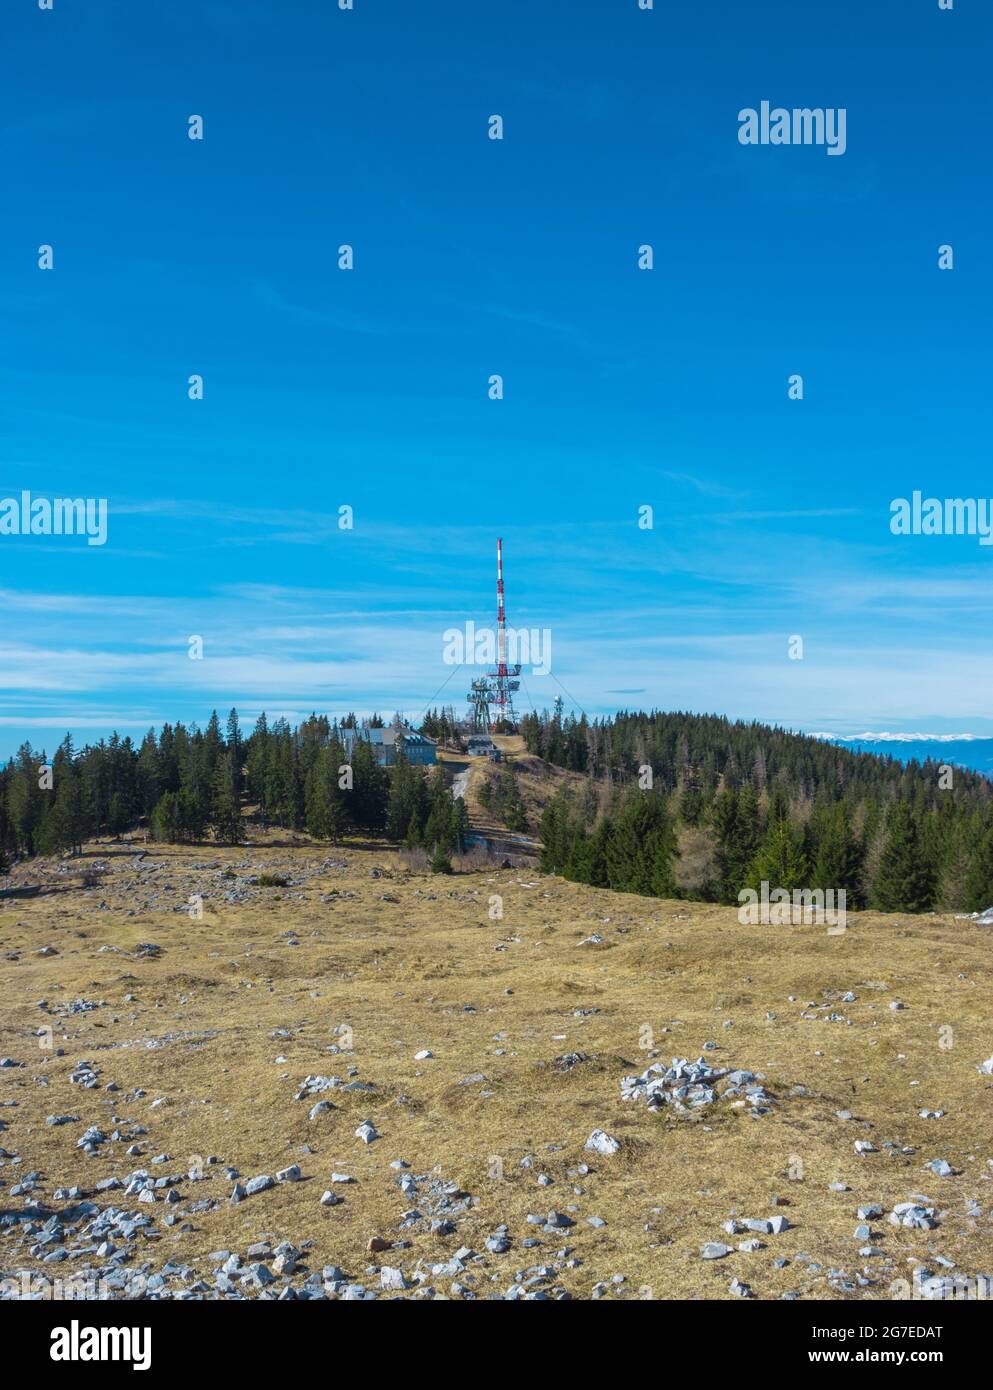 Fernmeldeturm mit direktionalen Mobilfunk- und Internetantennen auf dem Schockl in St. Radegund, bei Graz, Österreich. Drahtlose Kommunikation Stockfoto